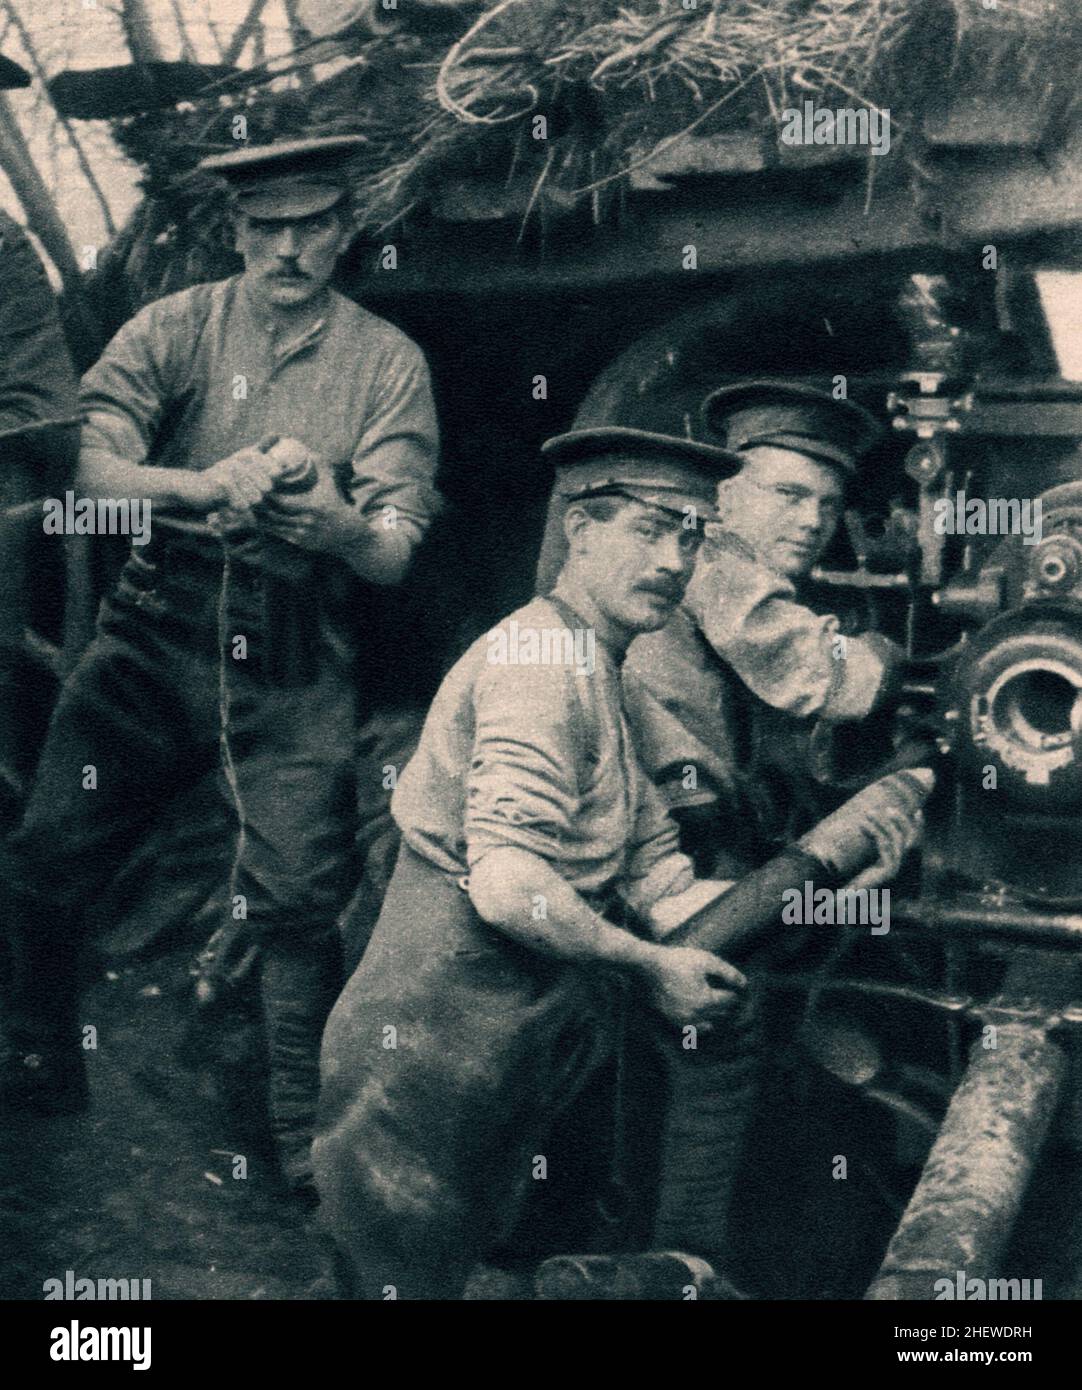 Des tirs d'artillerie britanniques en action sur le front occidental en 1914 Banque D'Images